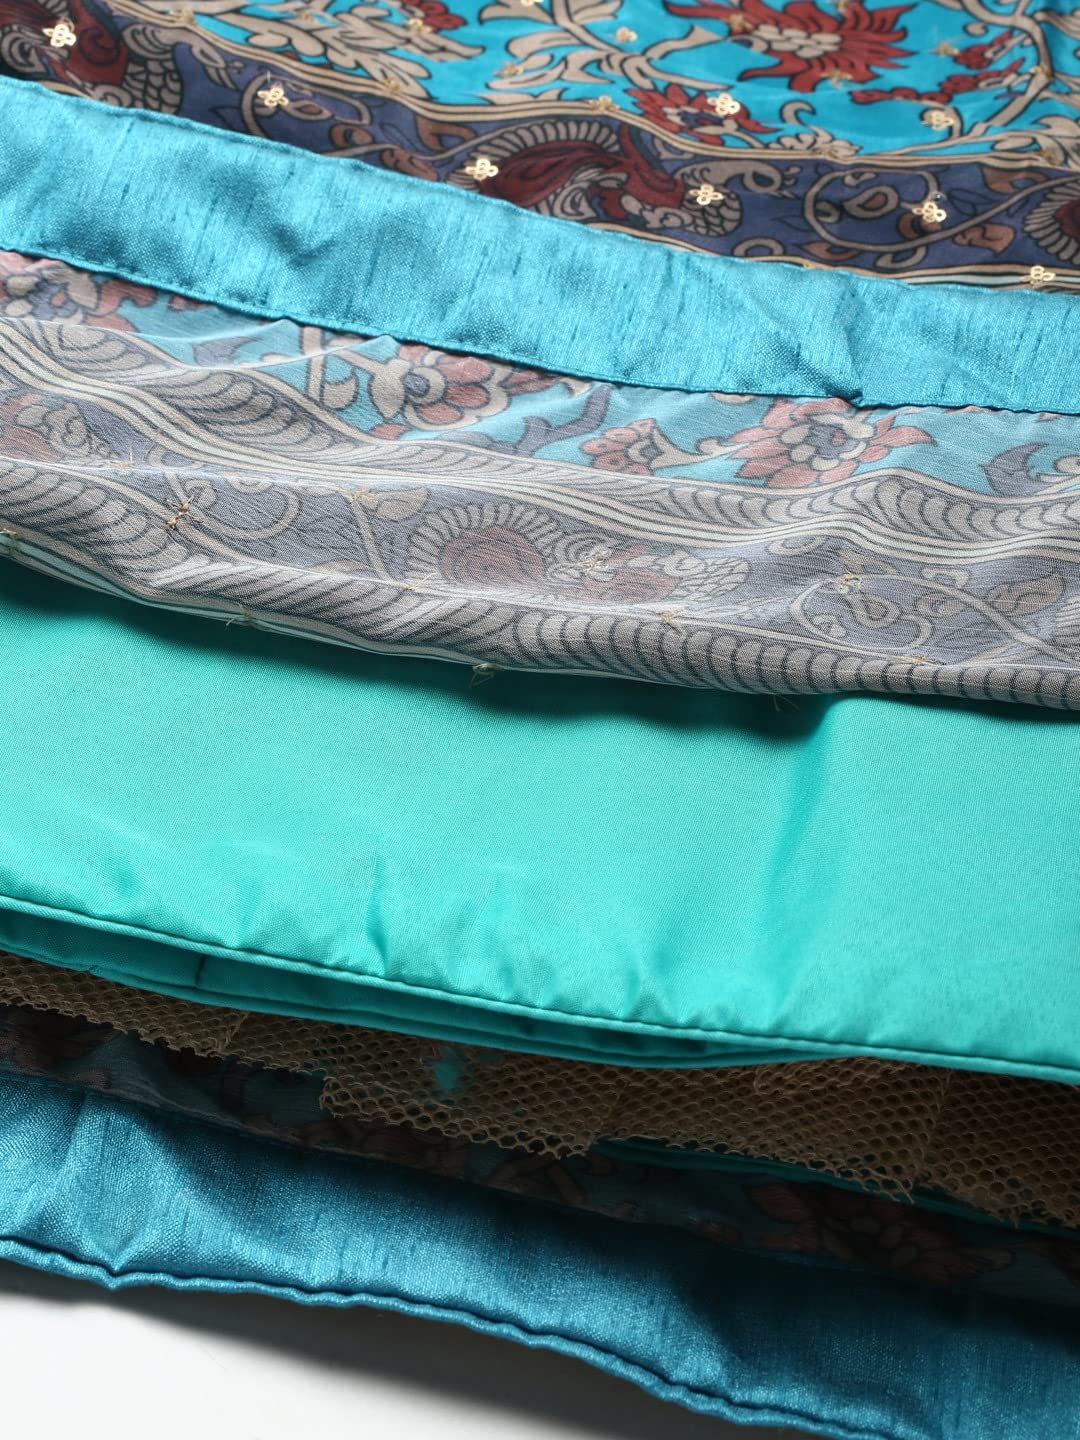 Zeel Clothing Women's Silk Embroidered Semi-Stitched Wedding Lehenga Choli with Dupatta (106-Blue-Wedding-Bridal-Latest-Lehenga; Free Size)